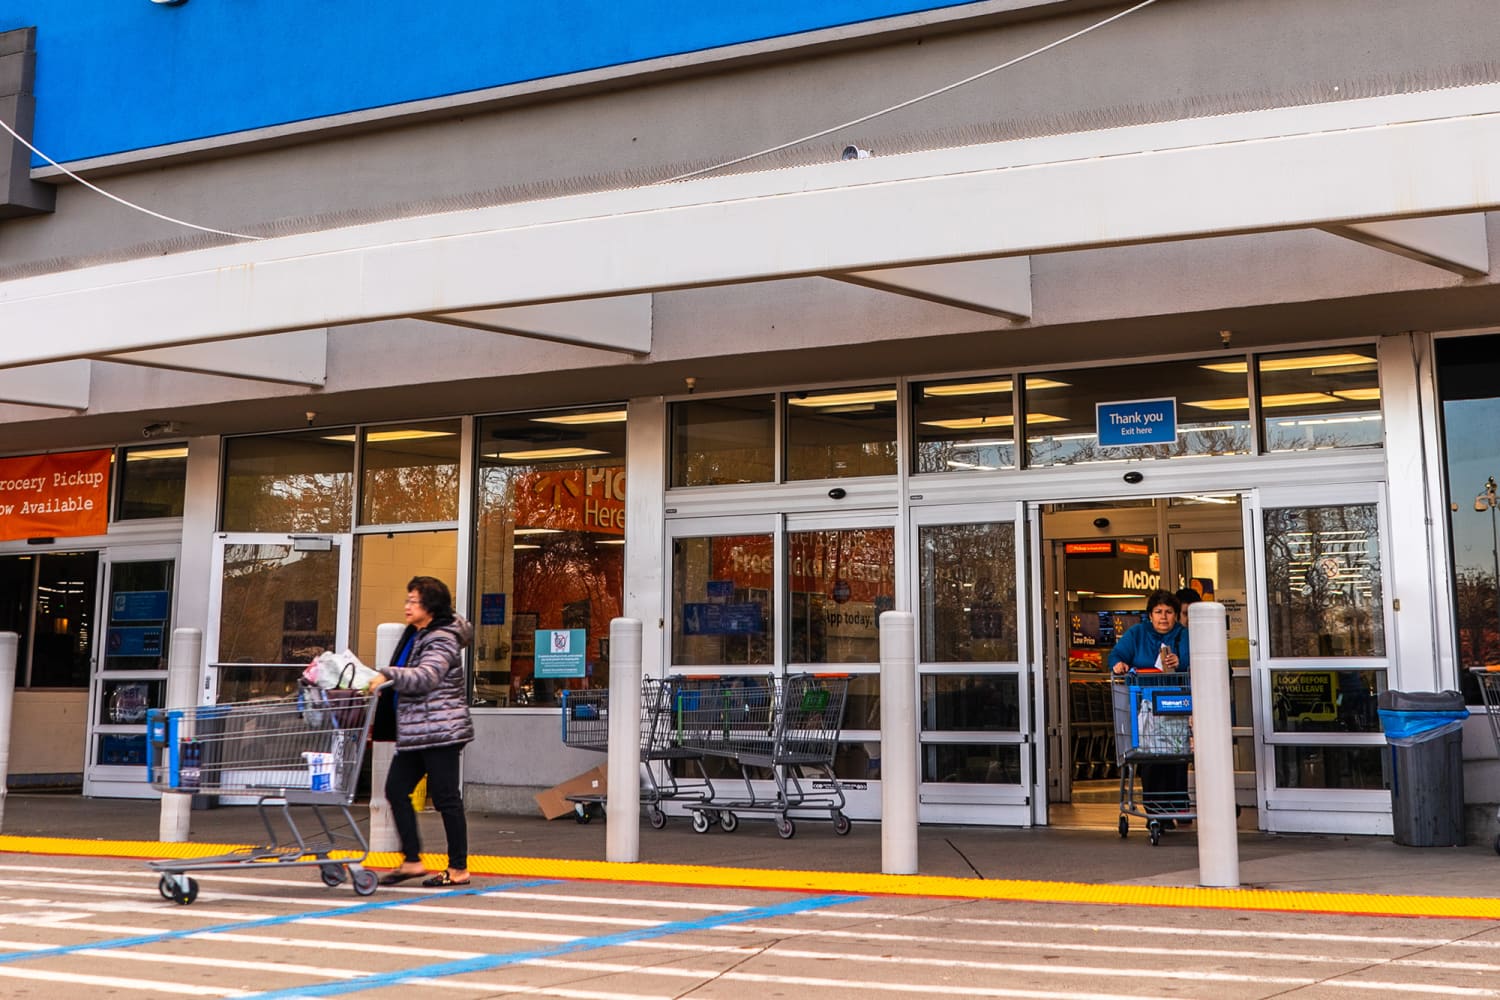 Walmart Easter Hours Open 2020: Is It Closed Near Me?